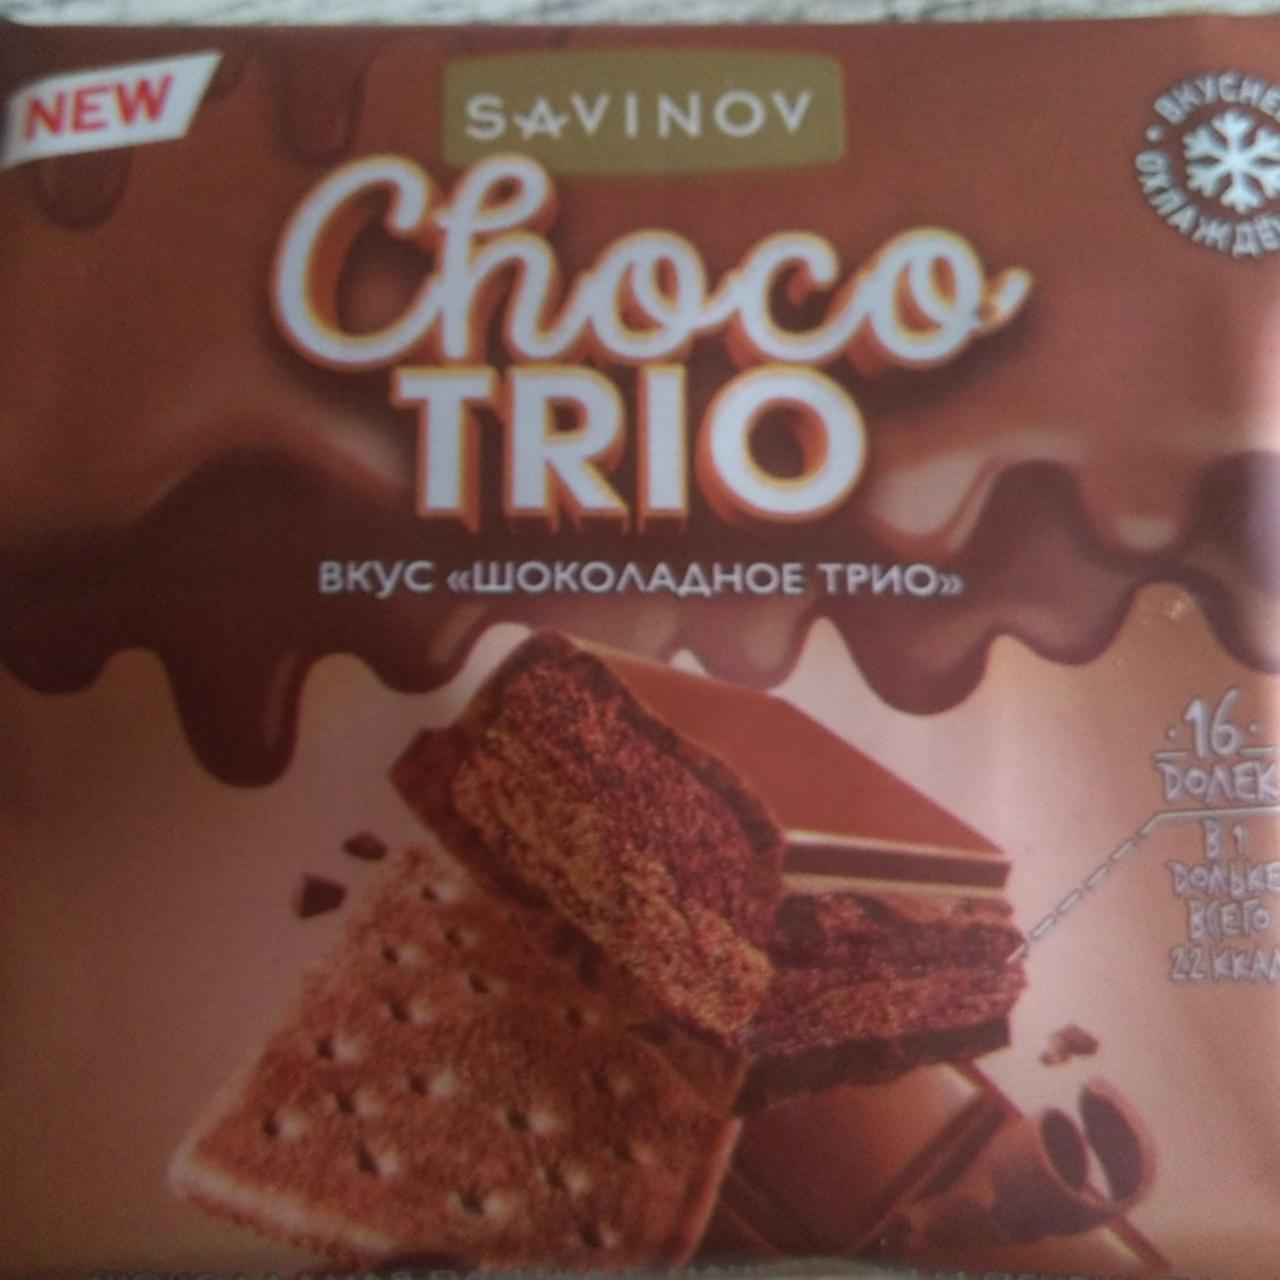 Фото - Шоколад молочный савинов со вкусом Сhoco trio Savinov